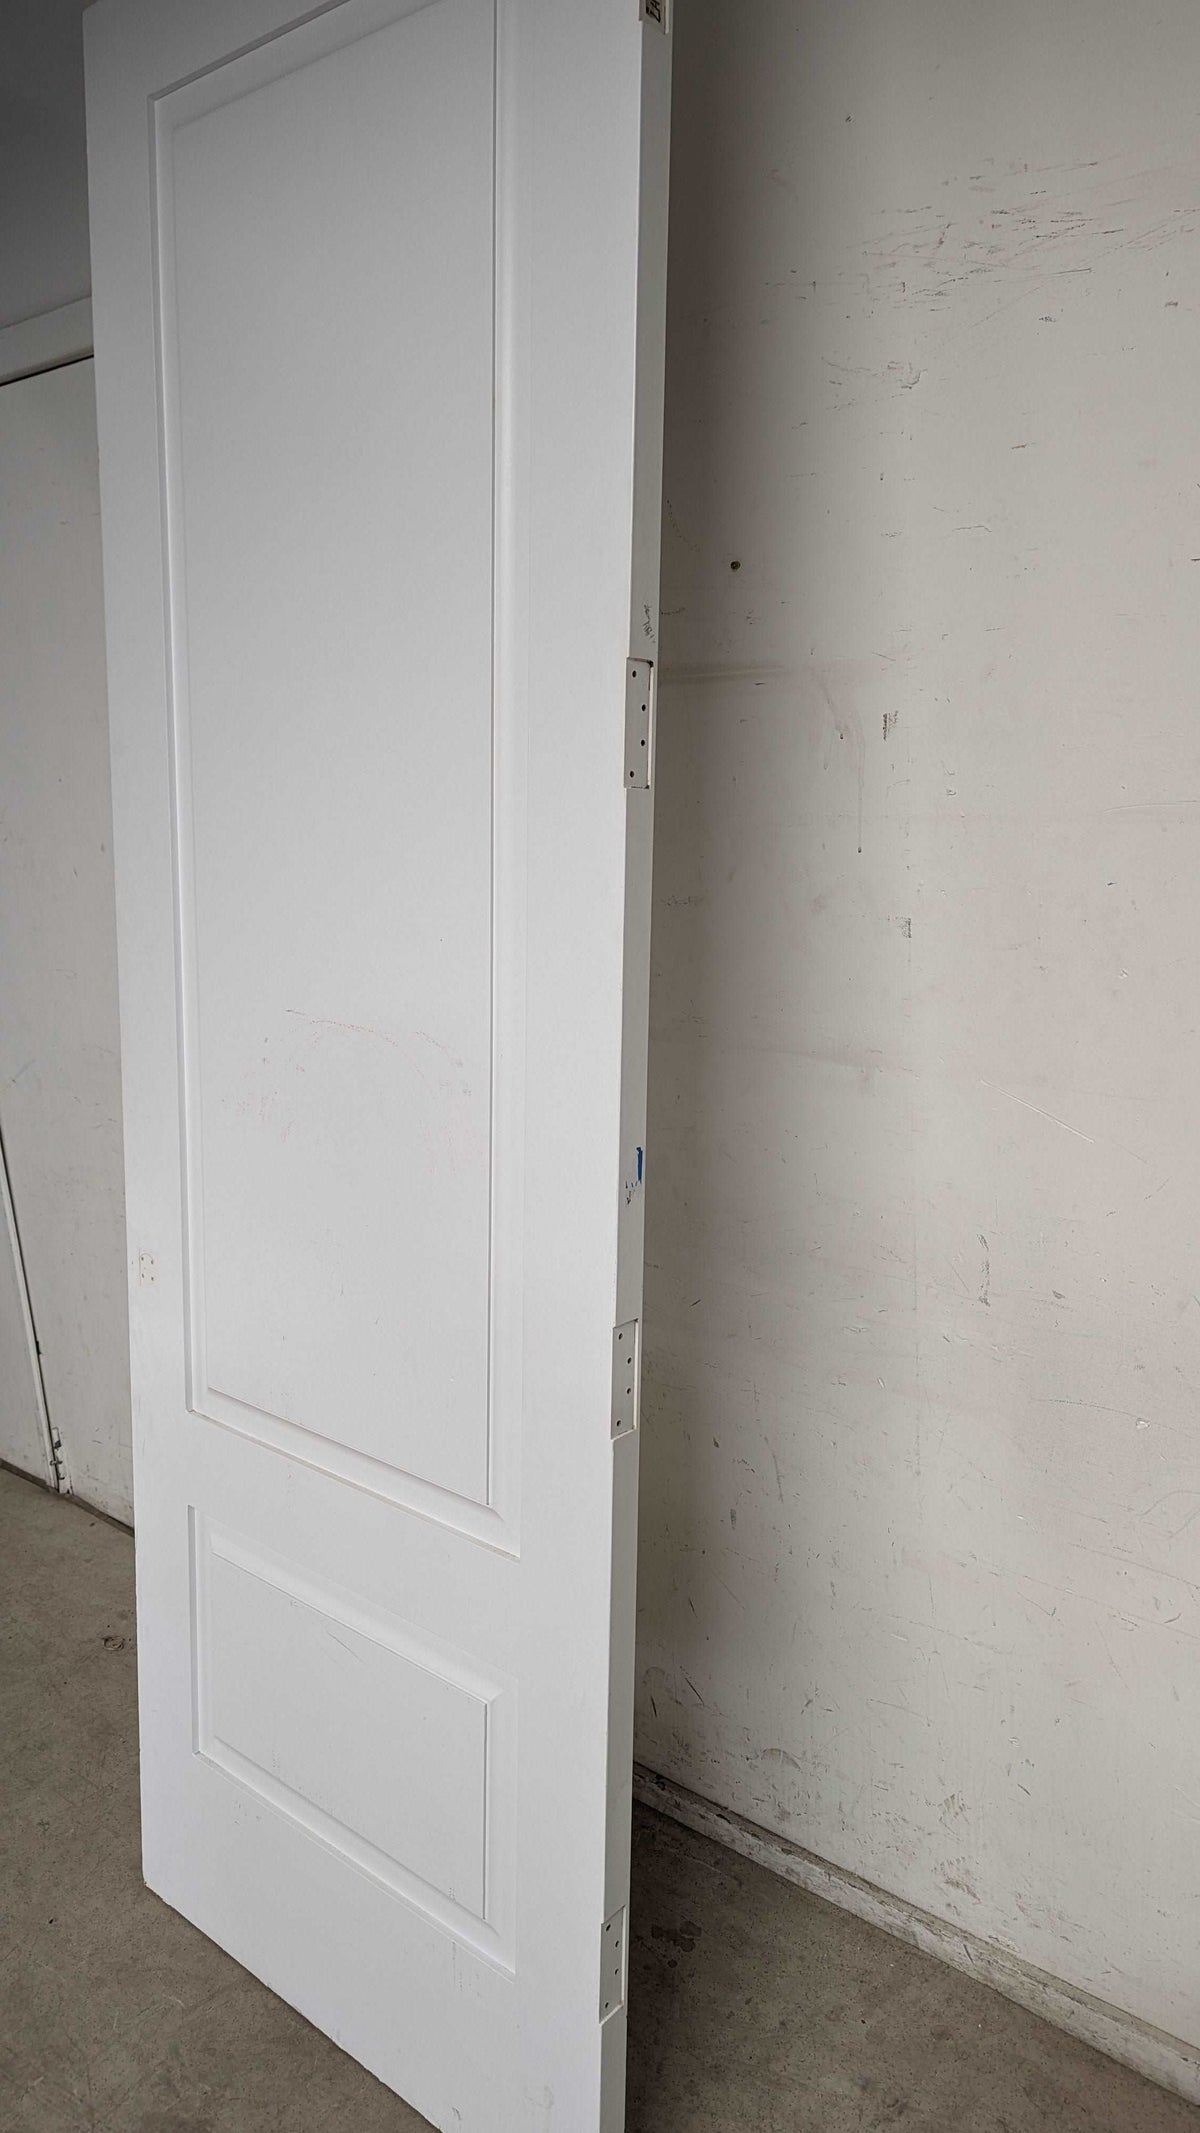 24" x 96" White Solid Core Door